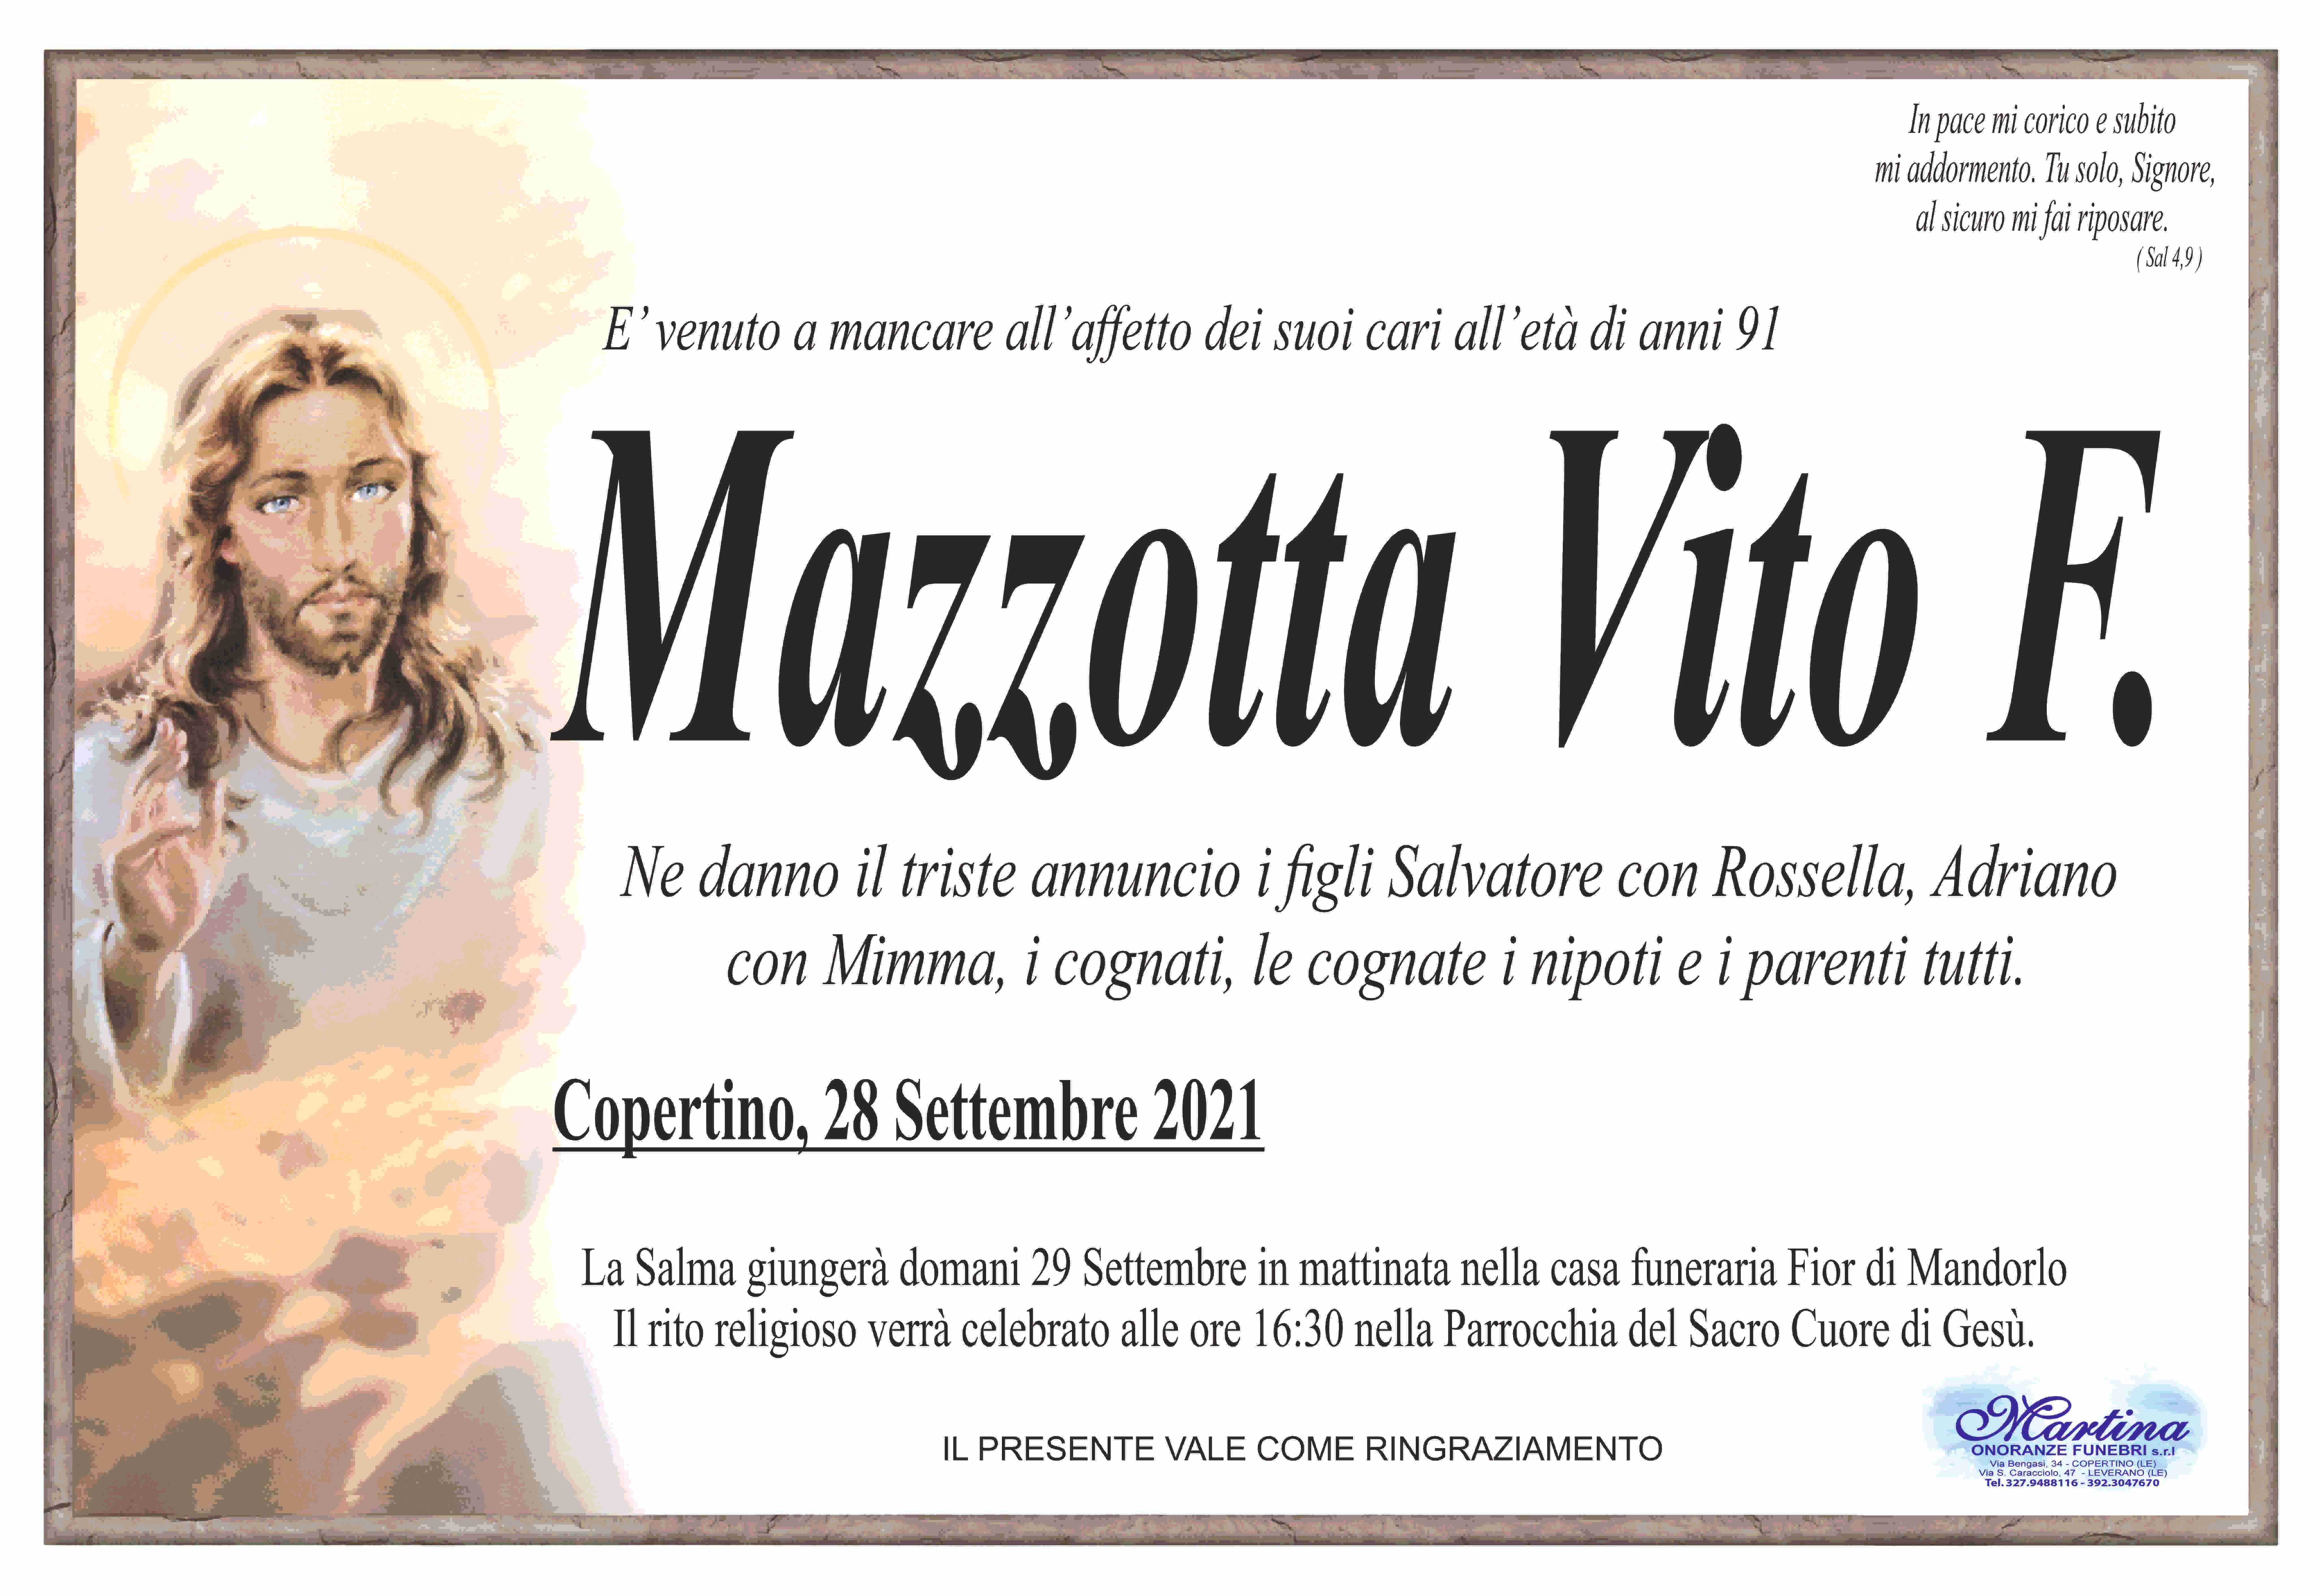 Vito Ferruccio Mazzotta